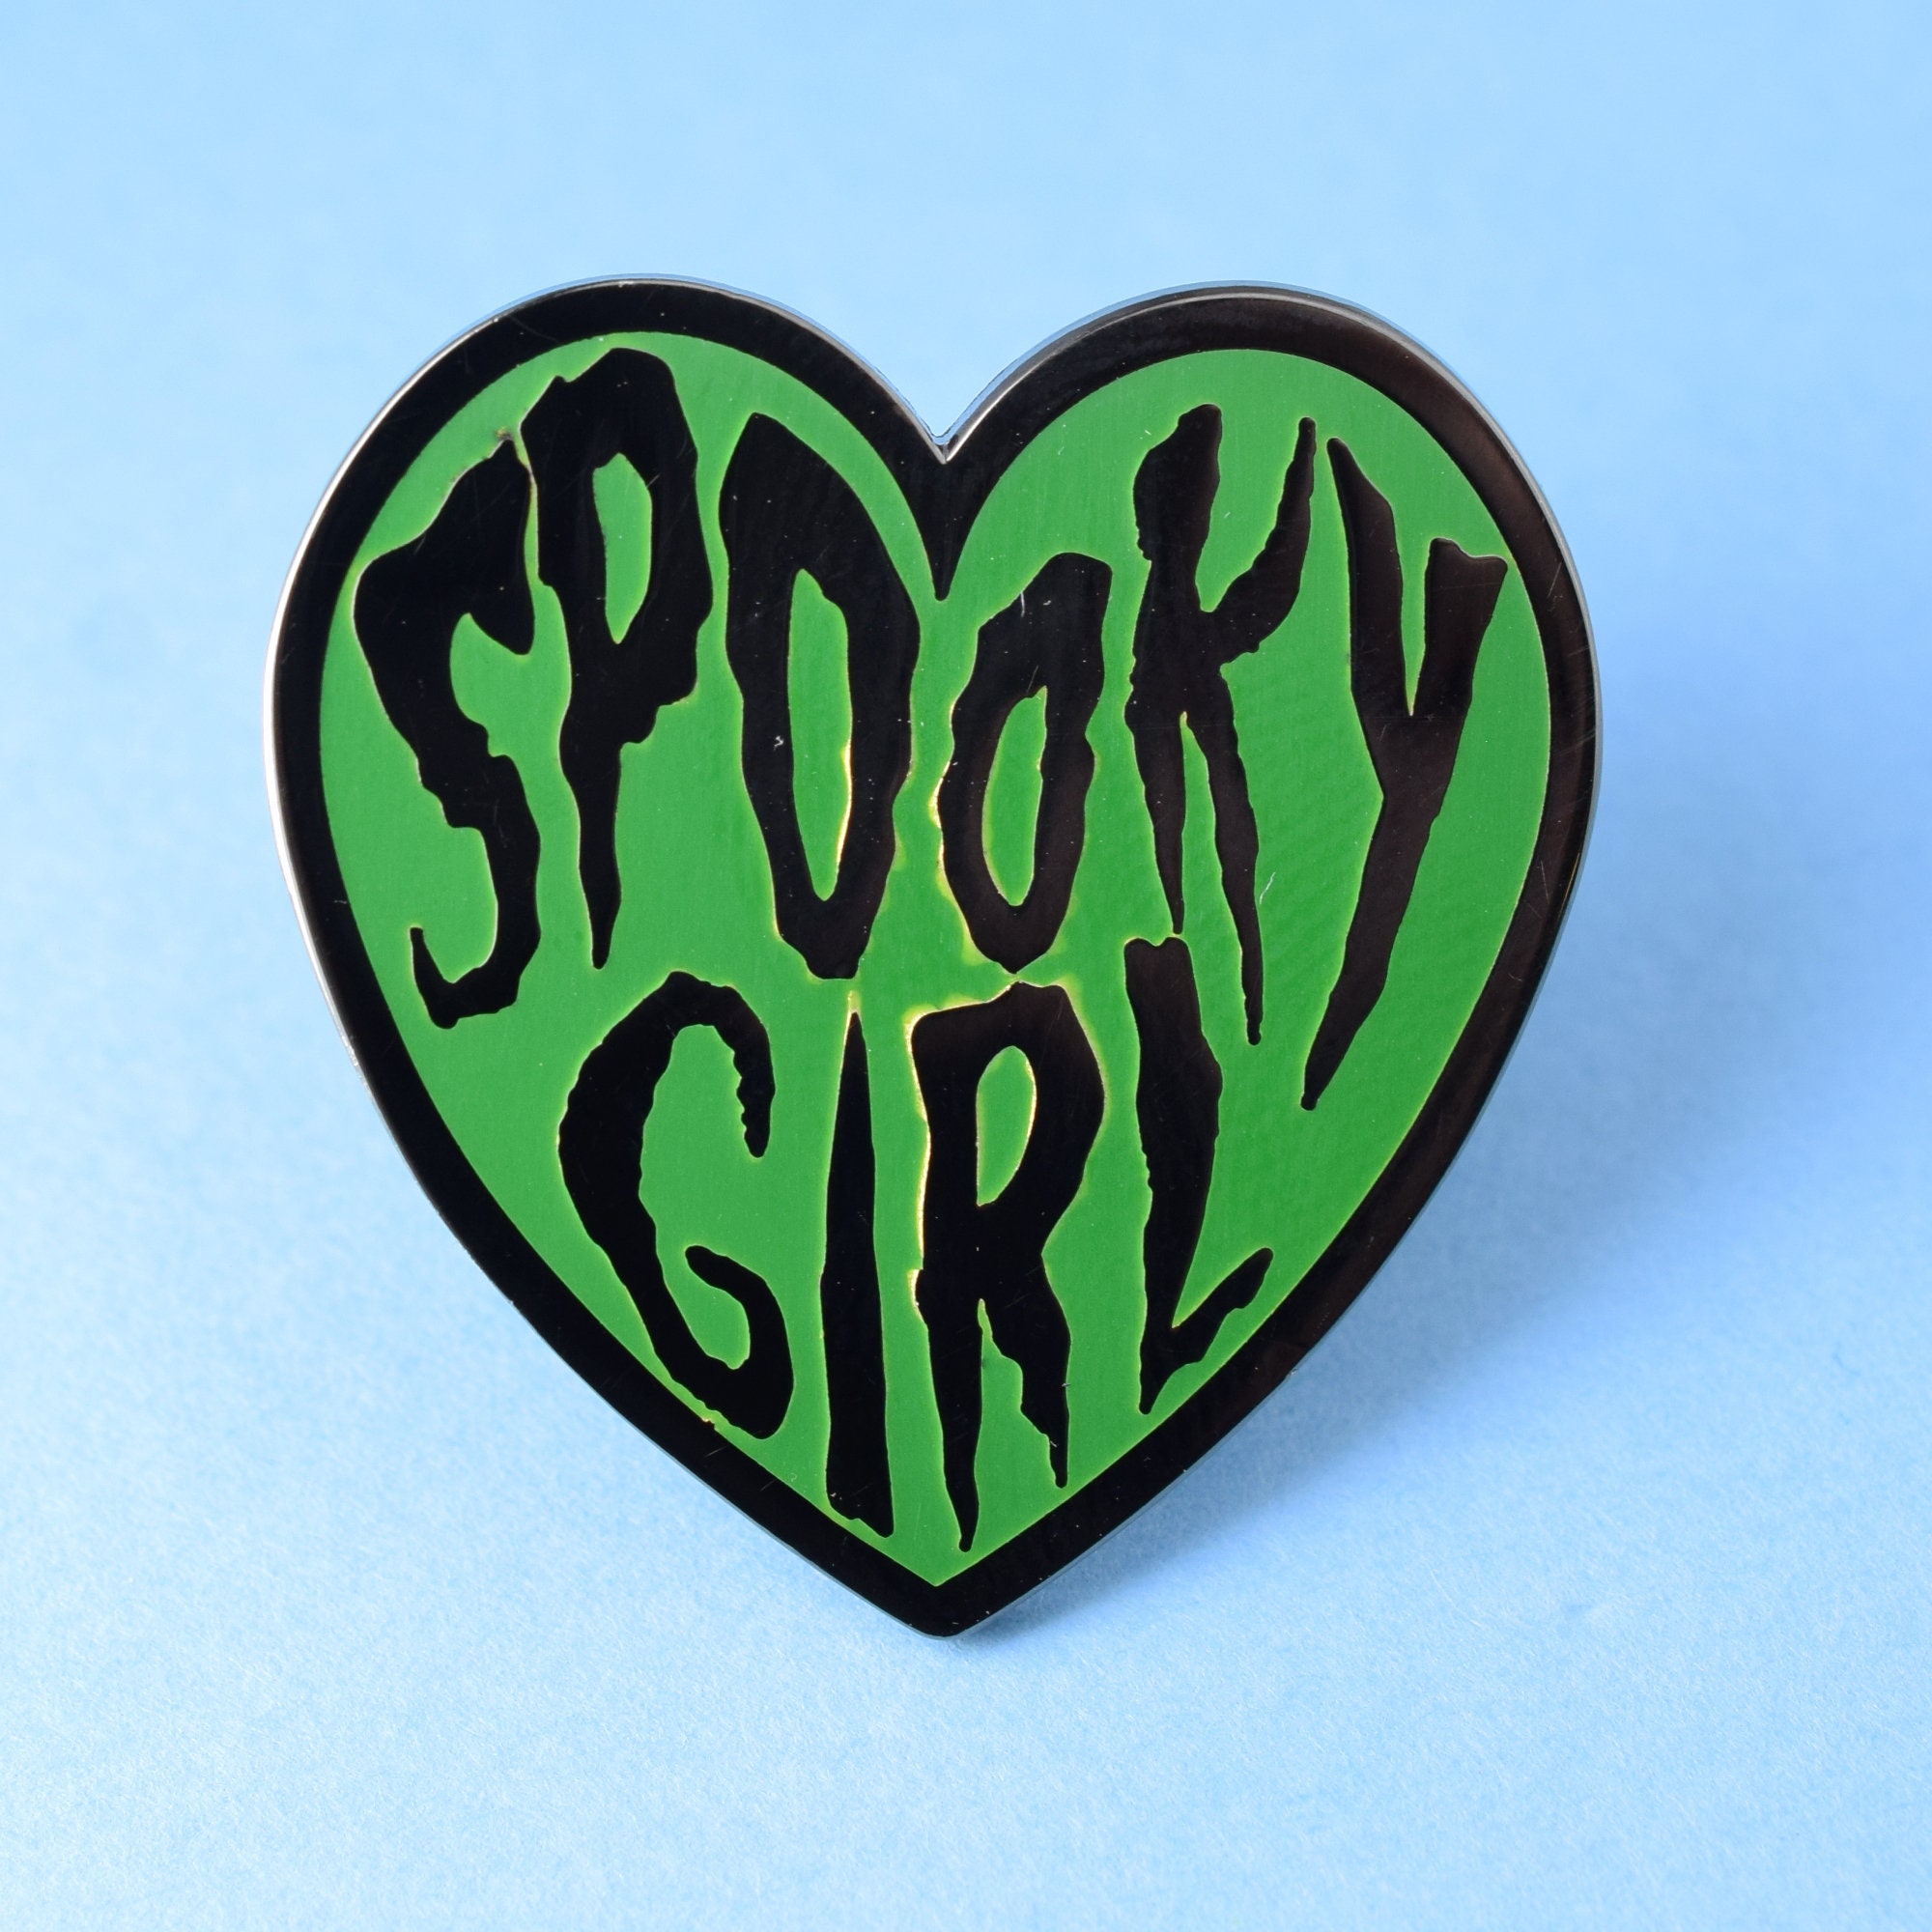 Love spooky girl Spooky Carli